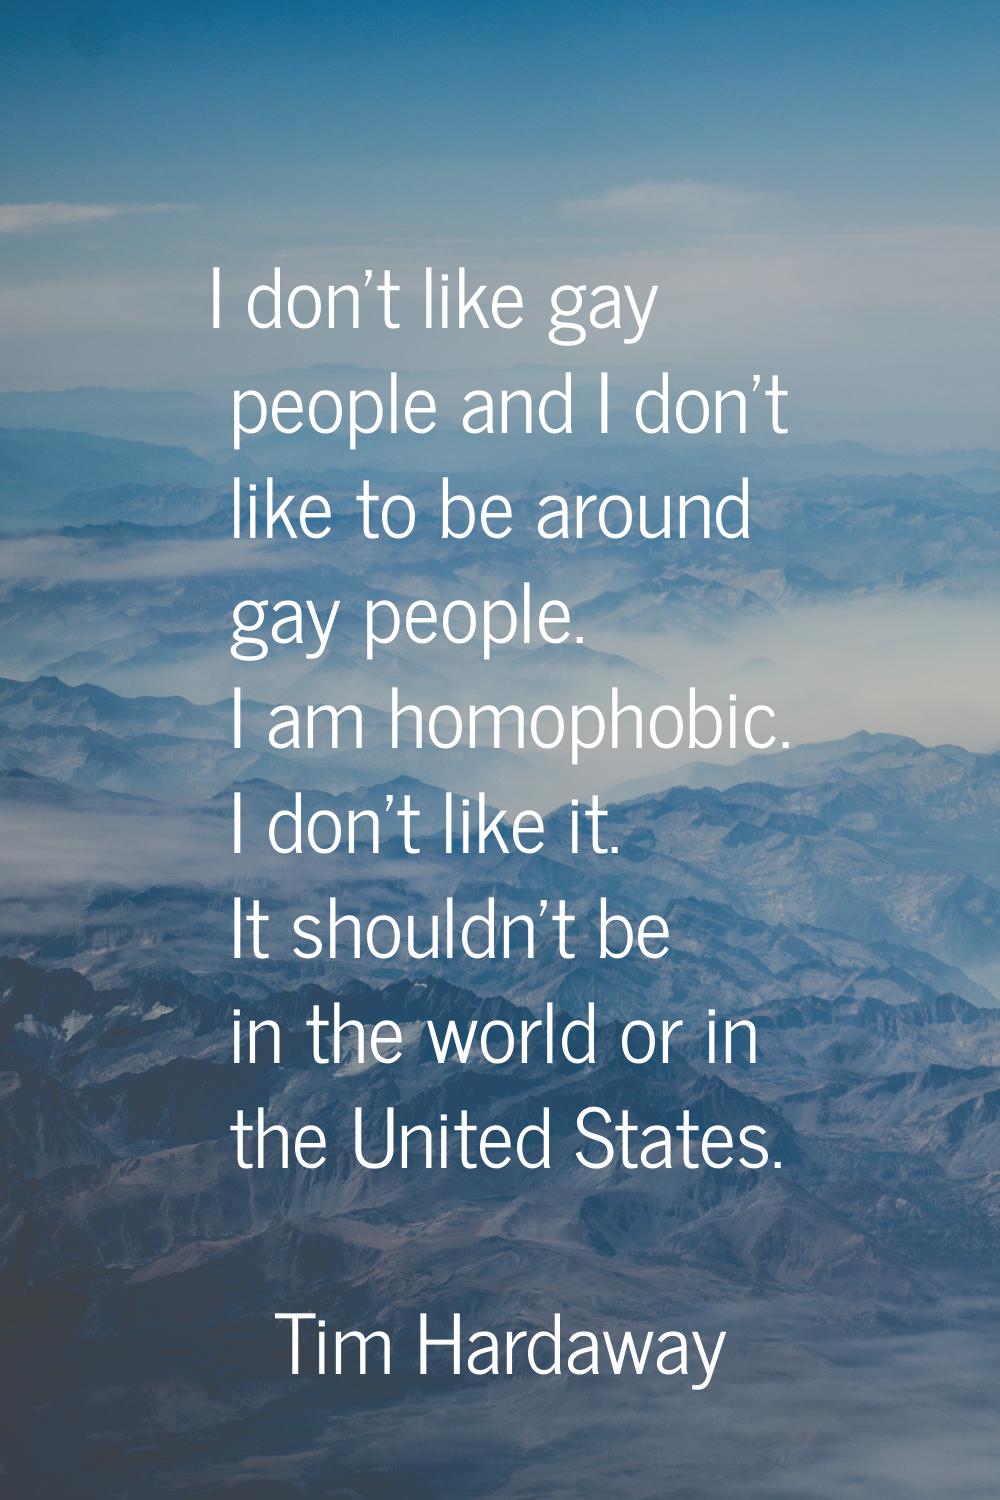 I don't like gay people and I don't like to be around gay people. I am homophobic. I don't like it.